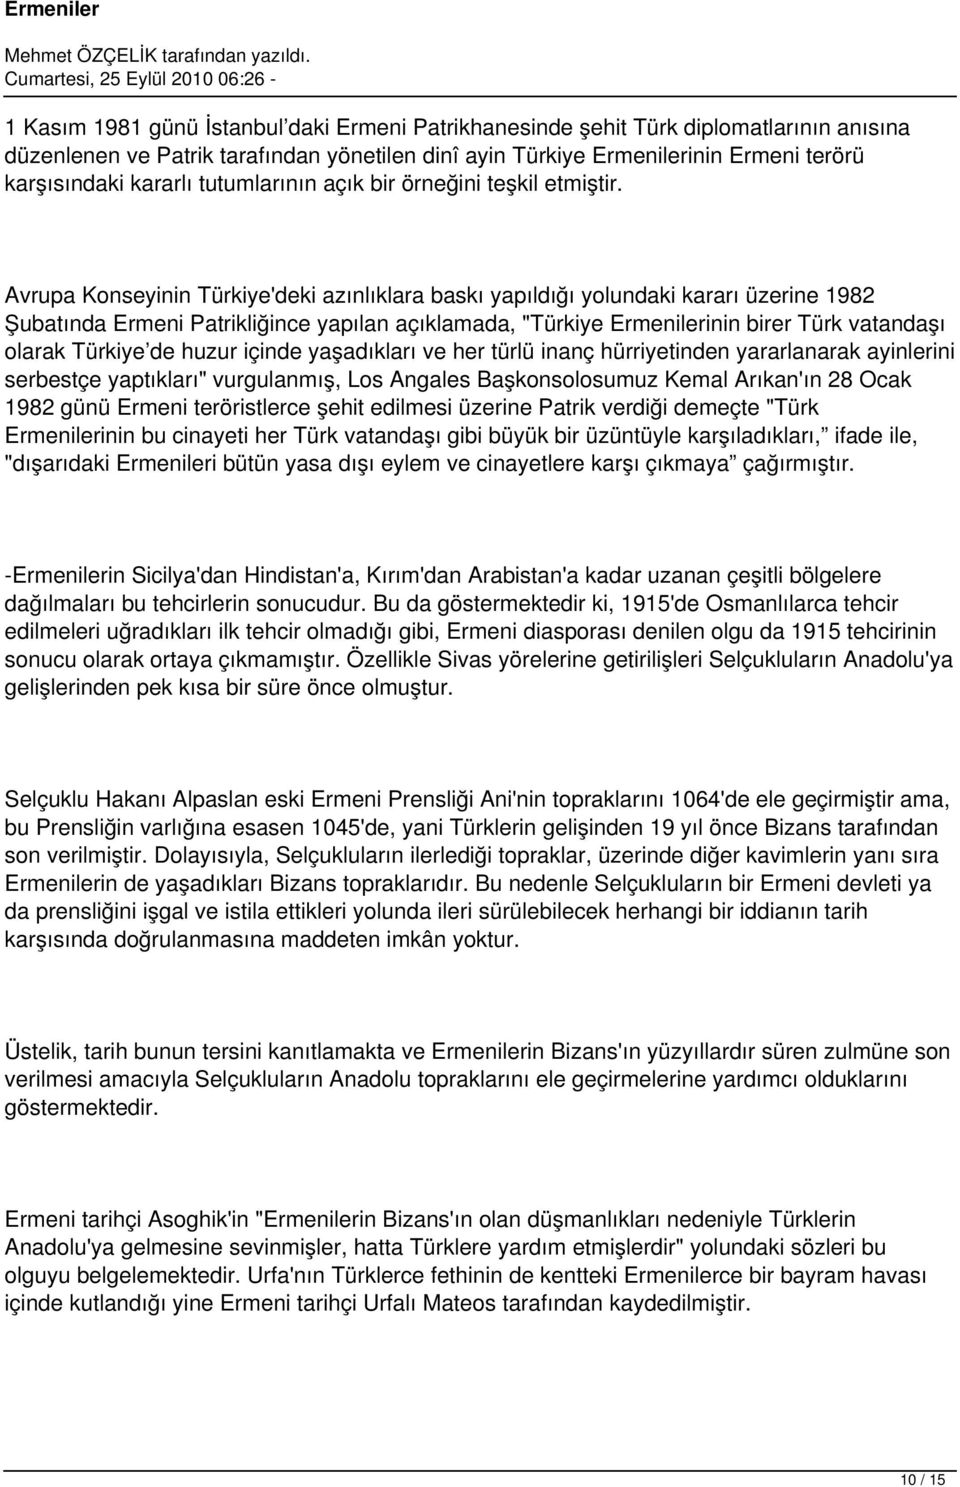 Avrupa Konseyinin Türkiye'deki azınlıklara baskı yapıldığı yolundaki kararı üzerine 1982 Şubatında Ermeni Patrikliğince yapılan açıklamada, "Türkiye Ermenilerinin birer Türk vatandaşı olarak Türkiye